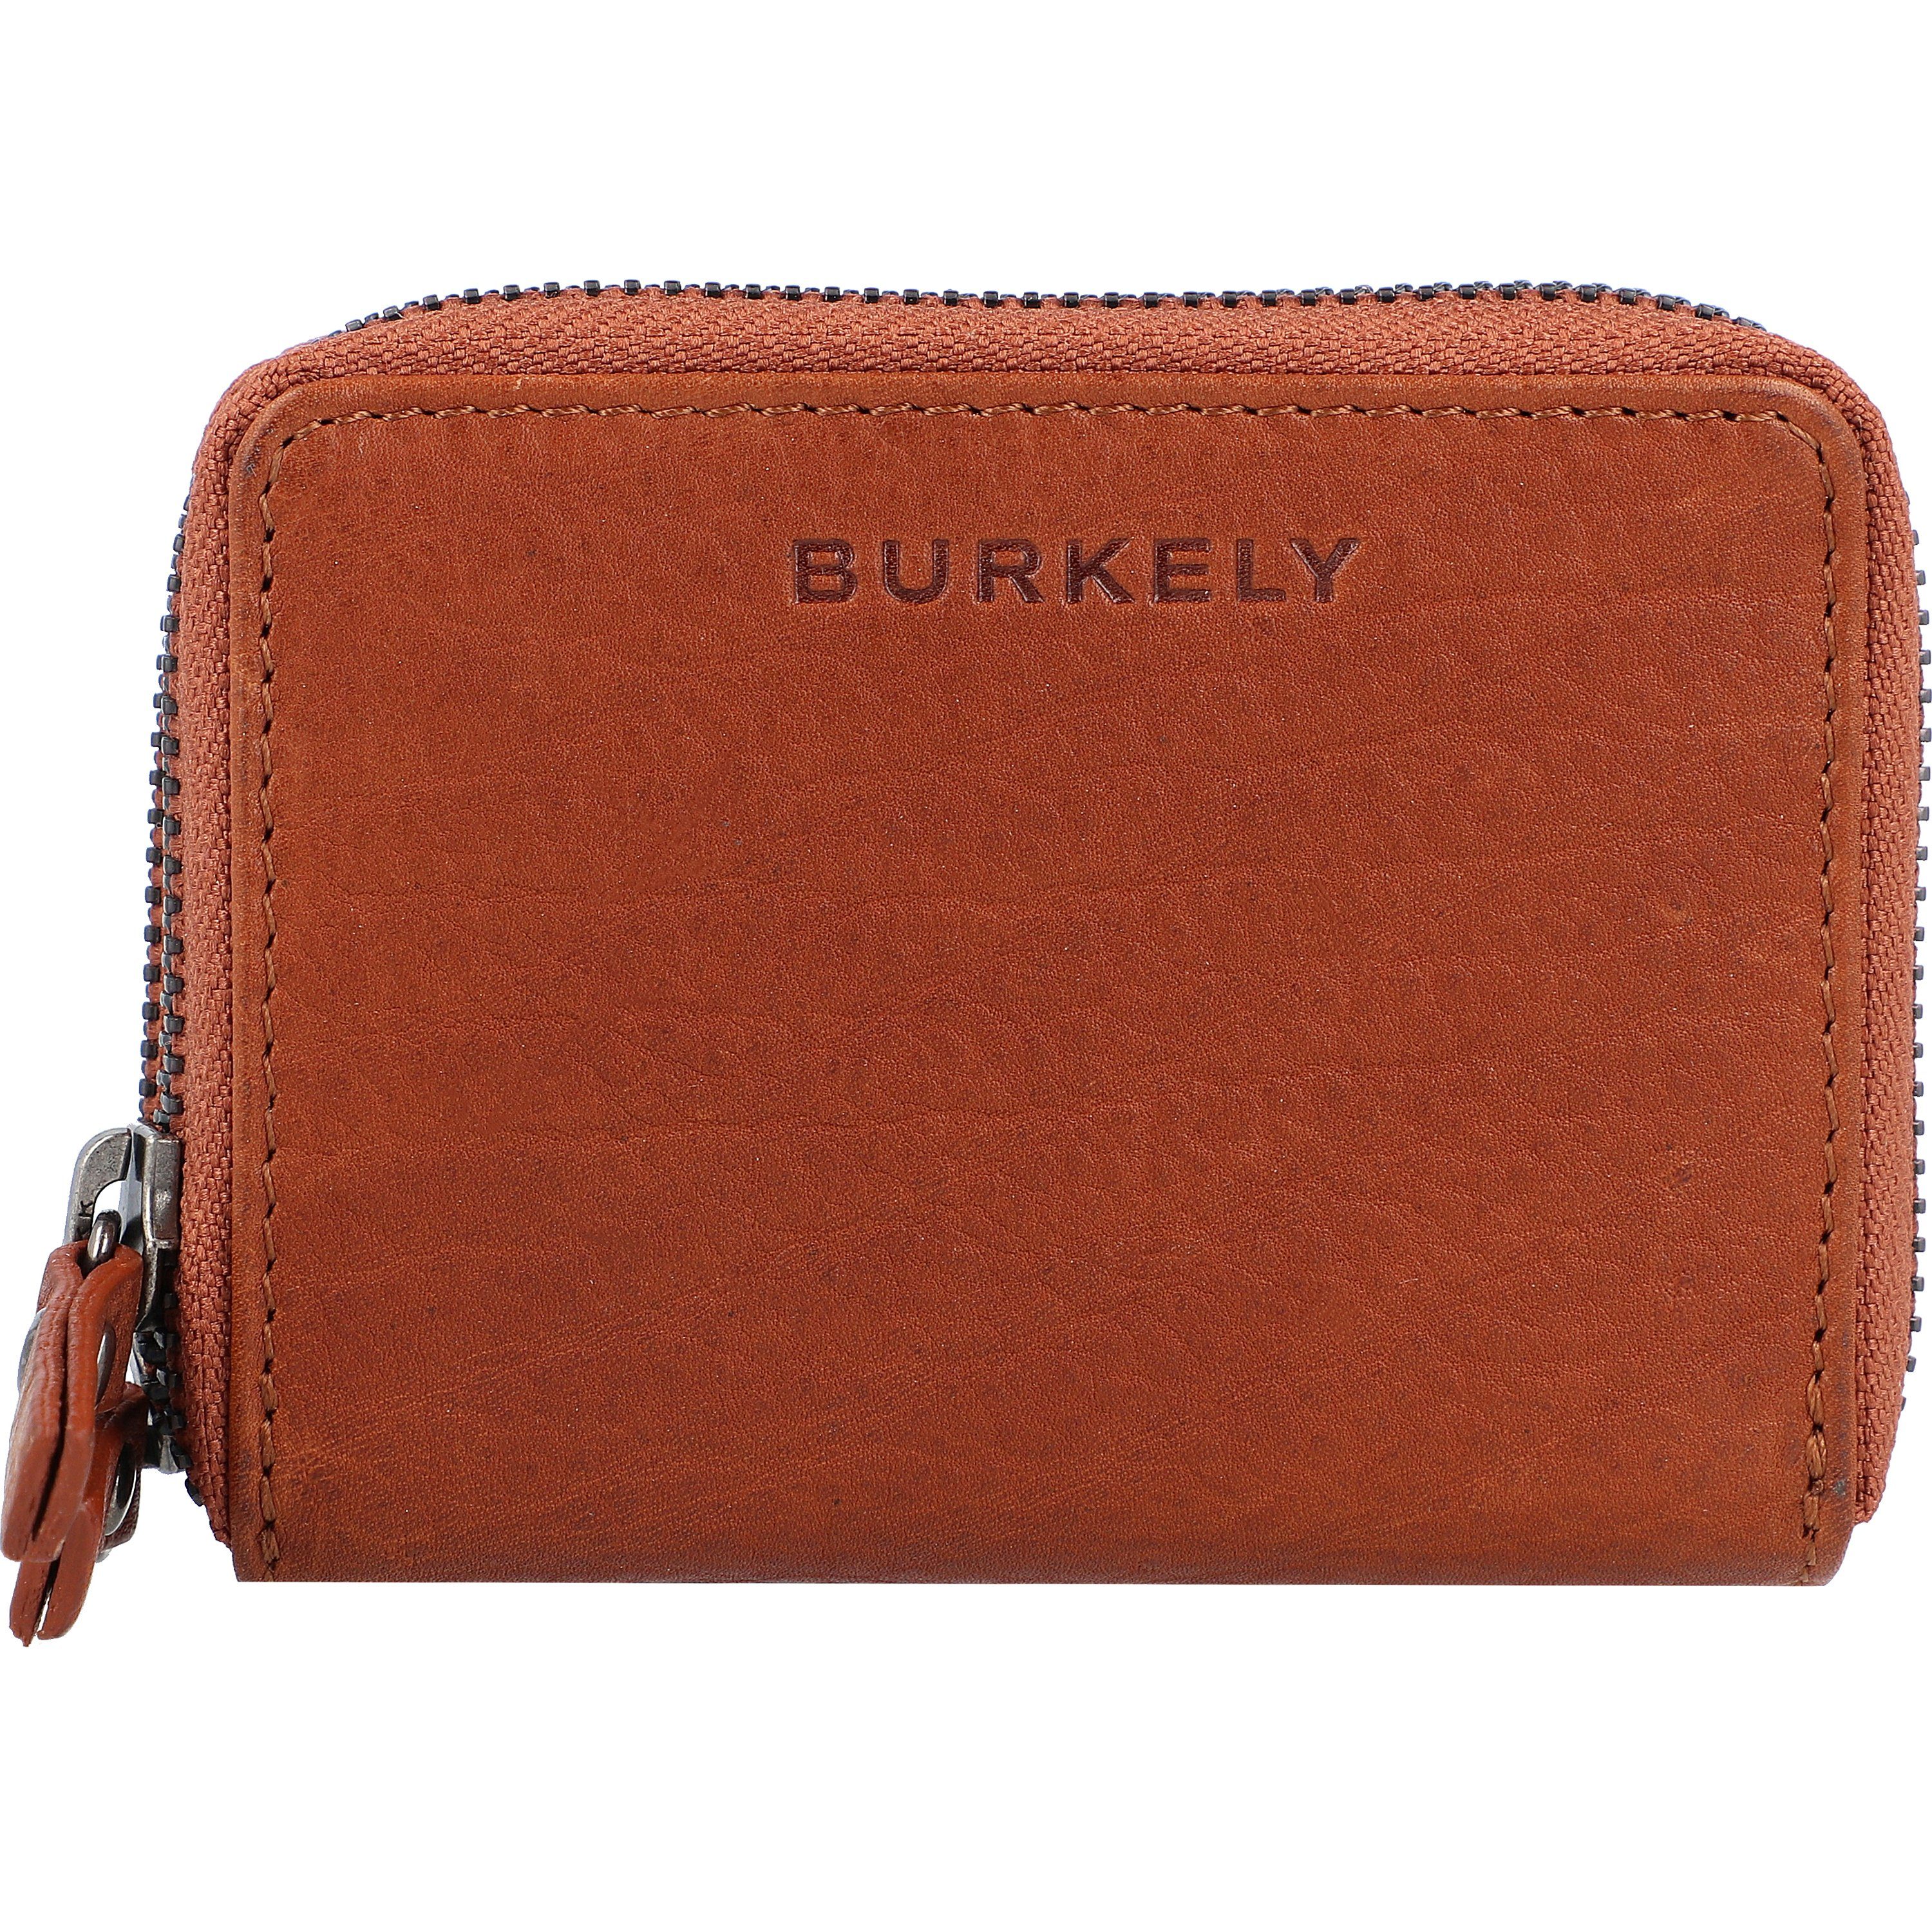 Burkely Geldbörse »Antique Avery«, Leder online kaufen | OTTO